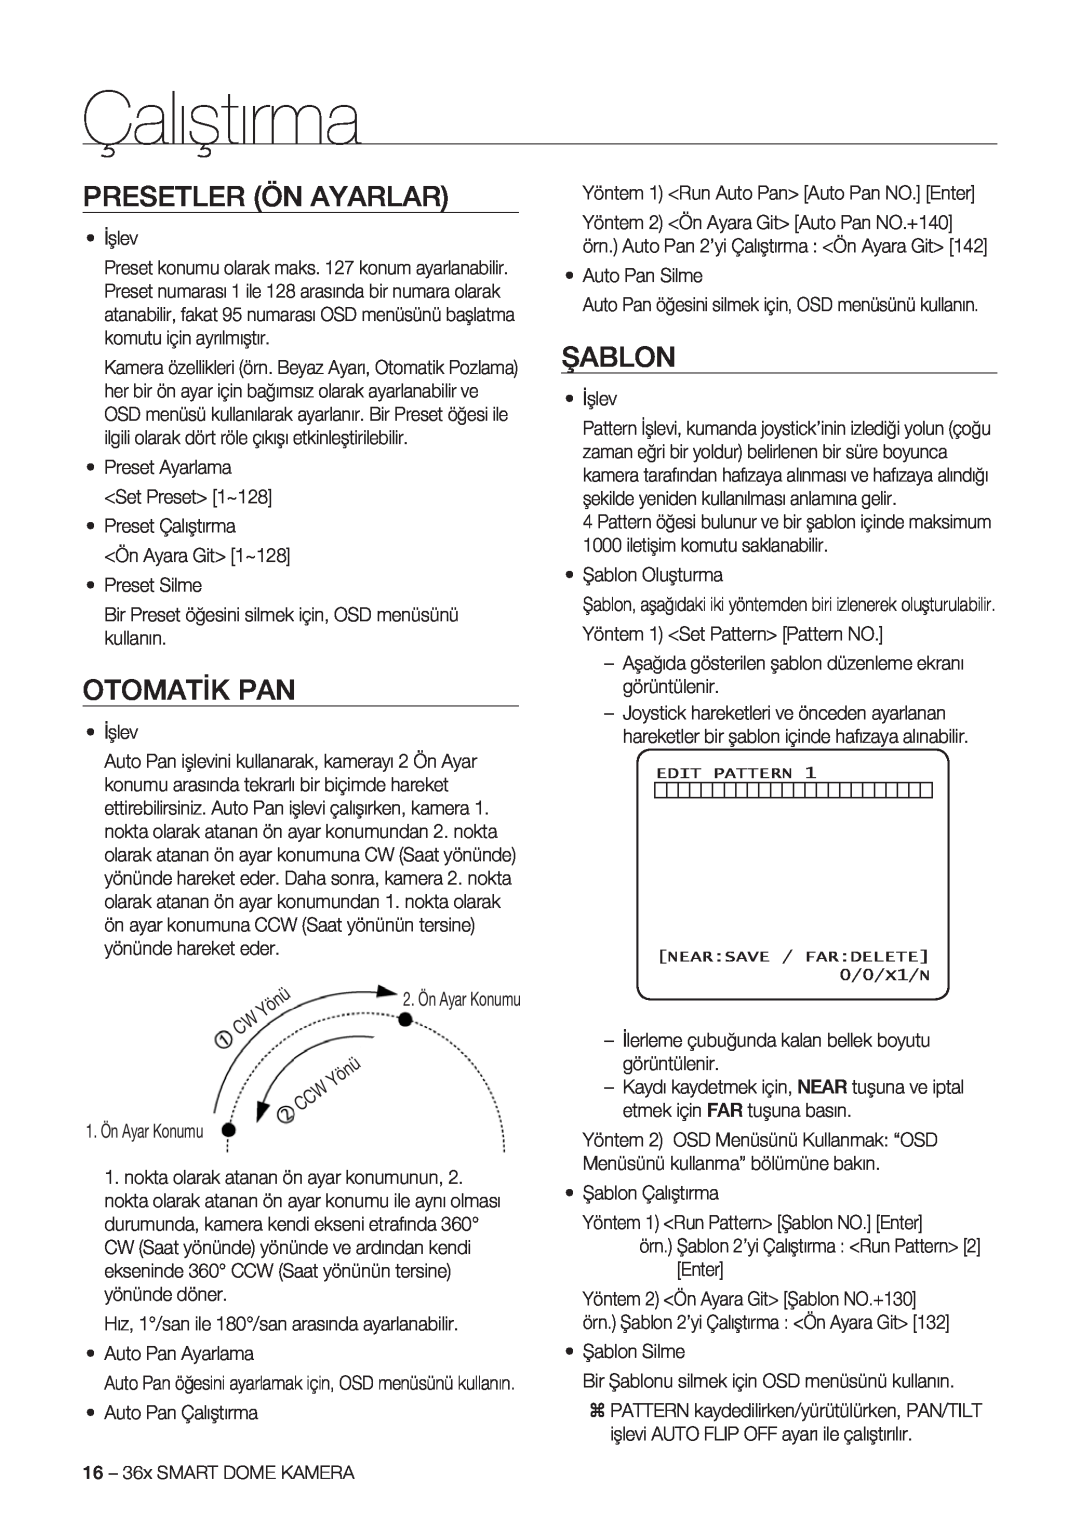 Samsung SCC-C7478P manual Presetler Ön Ayarlar, Otomatik Pan, Şablon, Çalıştırma 